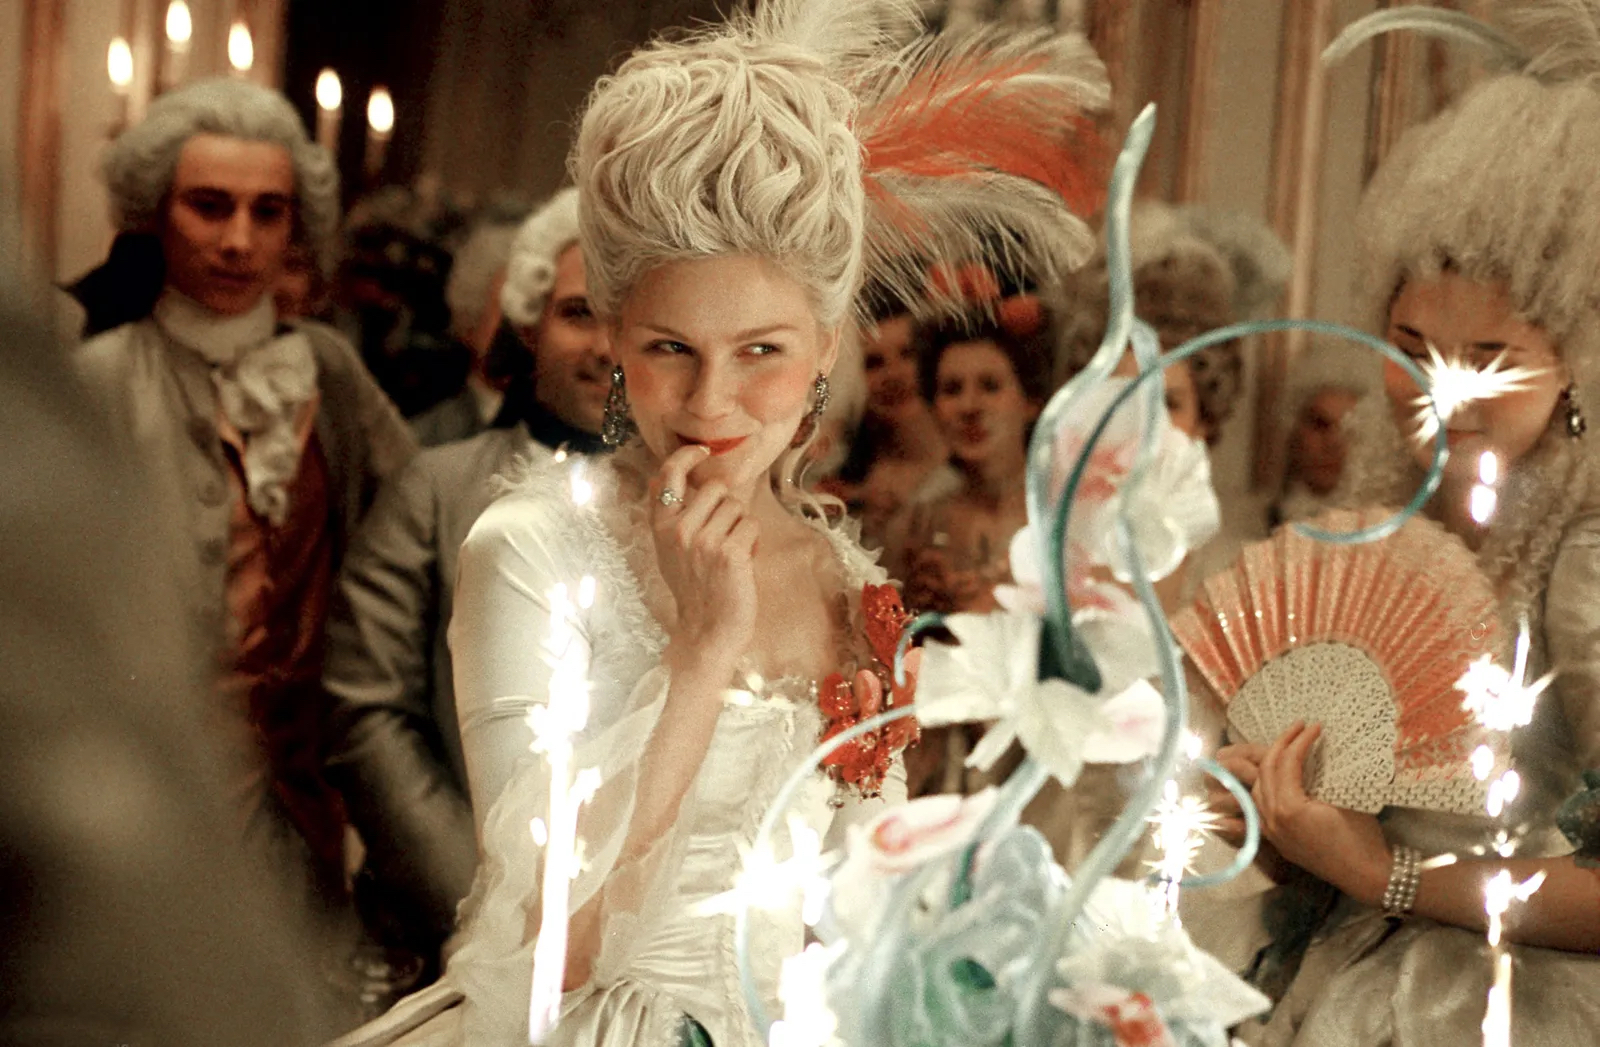 Marie Antoinette (2006) film still.